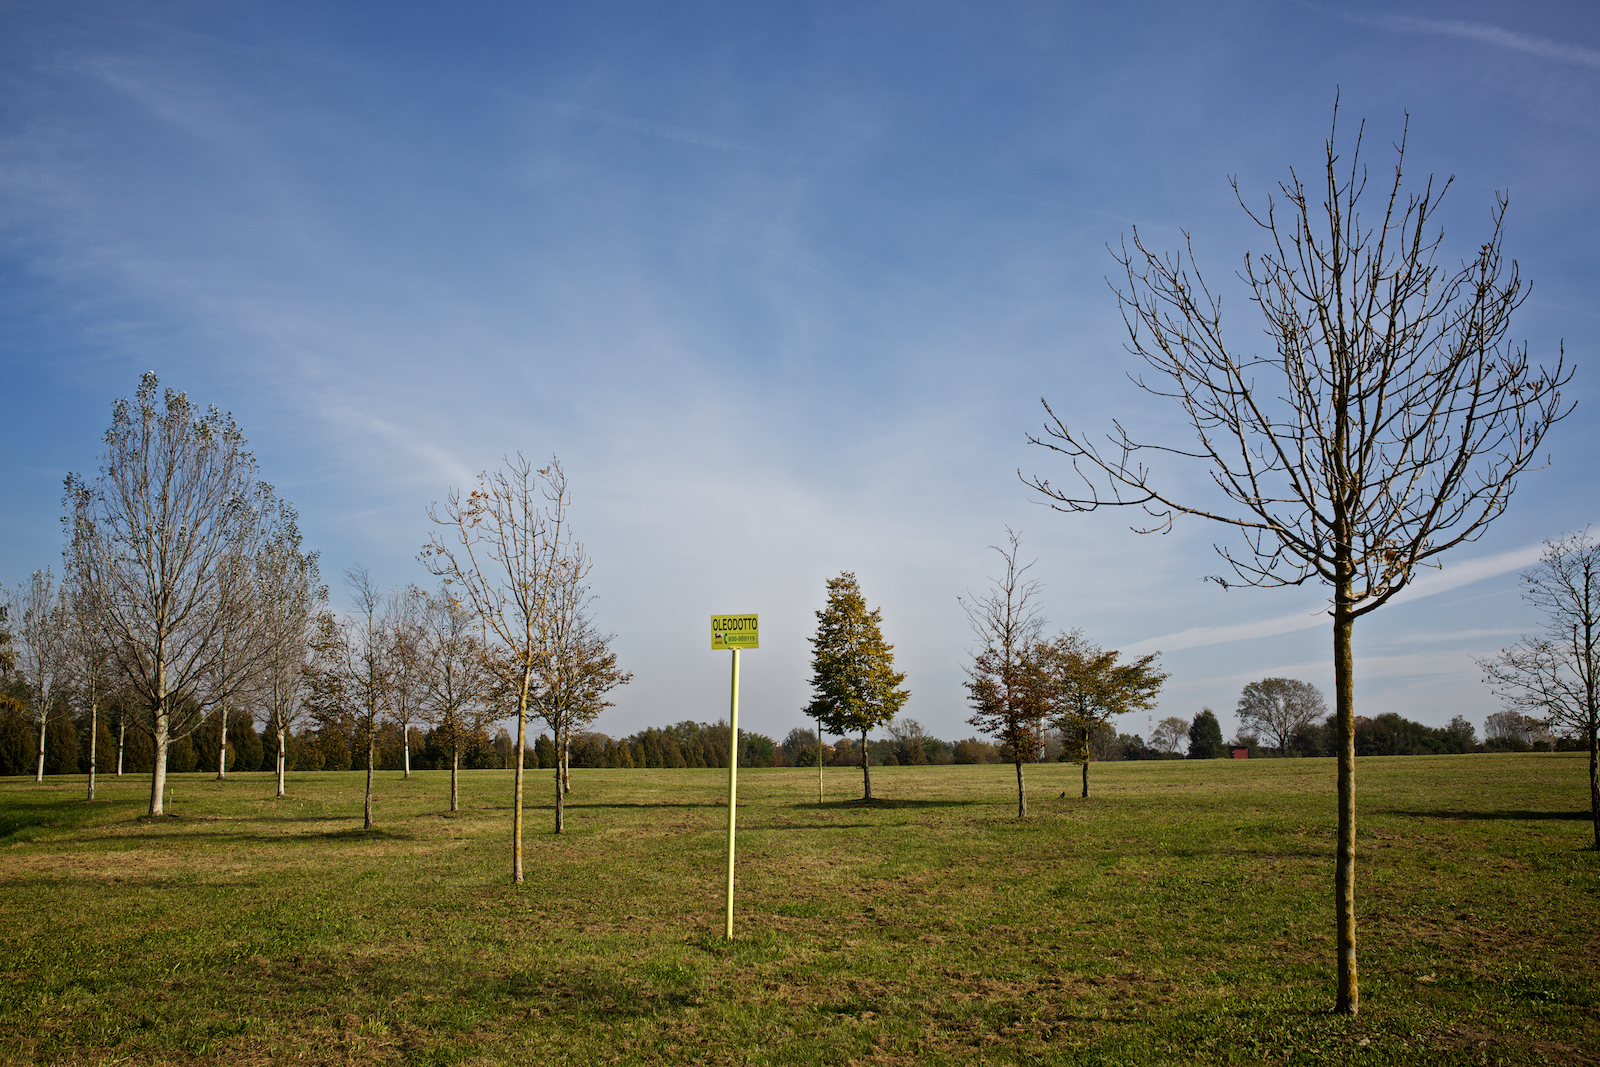  In alcune zone del parco di San Giuliano gli alberi non crescono a causa della presenza nel terreno di agenti contaminanti. Parco San Giuliano (Mestre) Novembre 2014. 